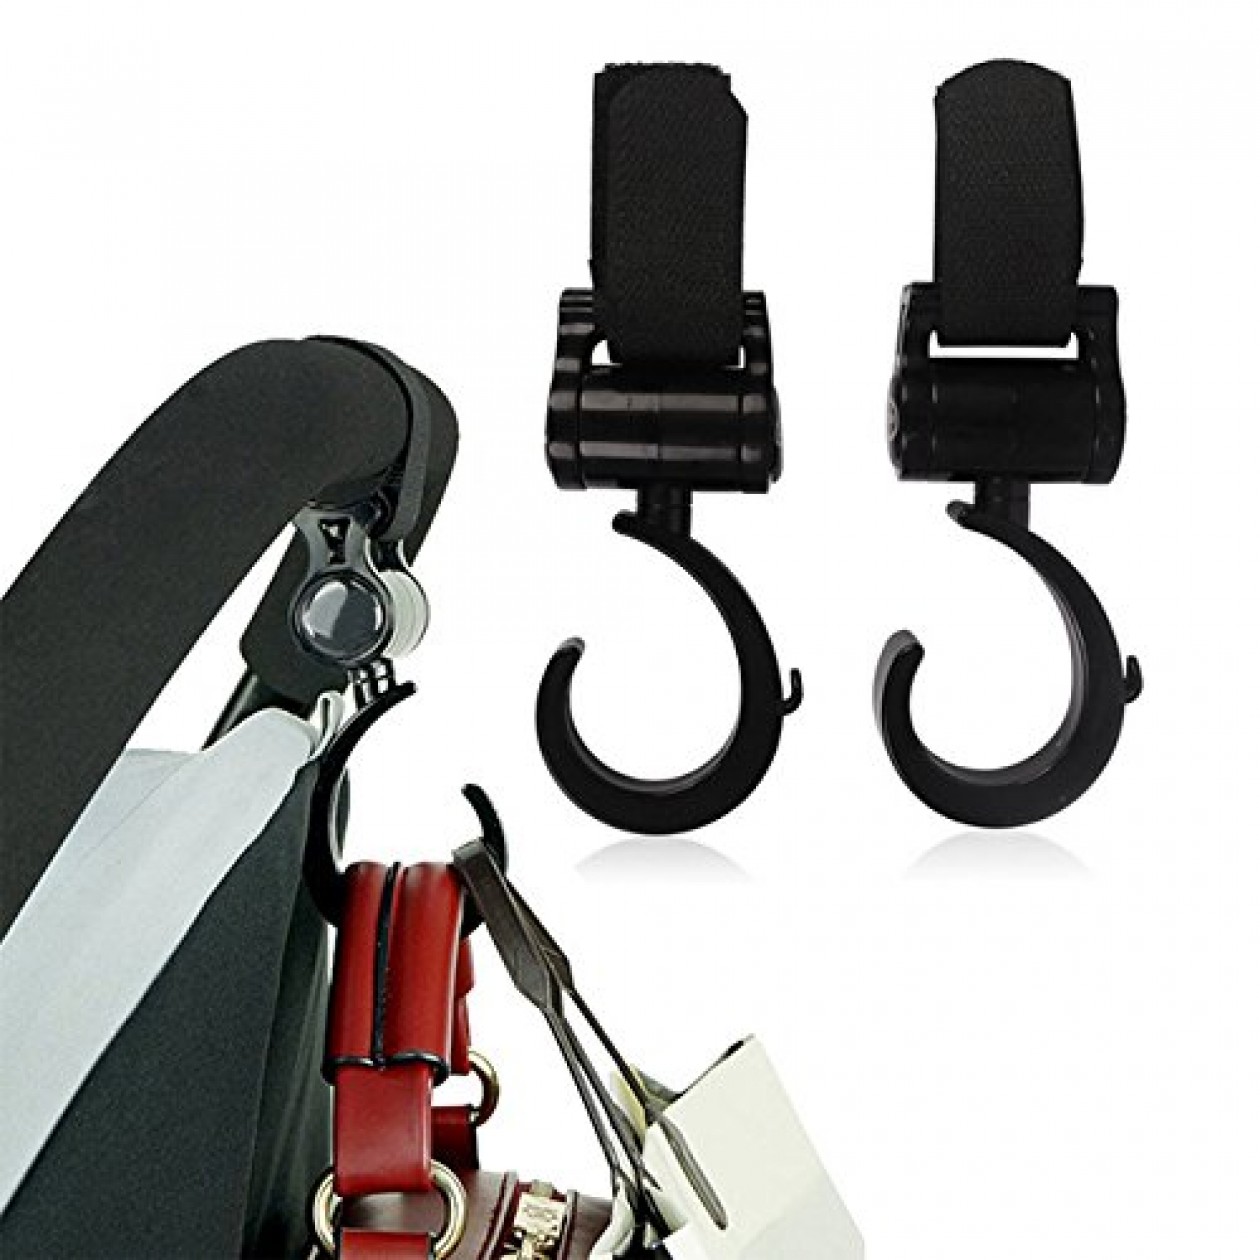 Rheme Two Hook and Stroll Buggy Bag Hook Pram Hook 2 Pack